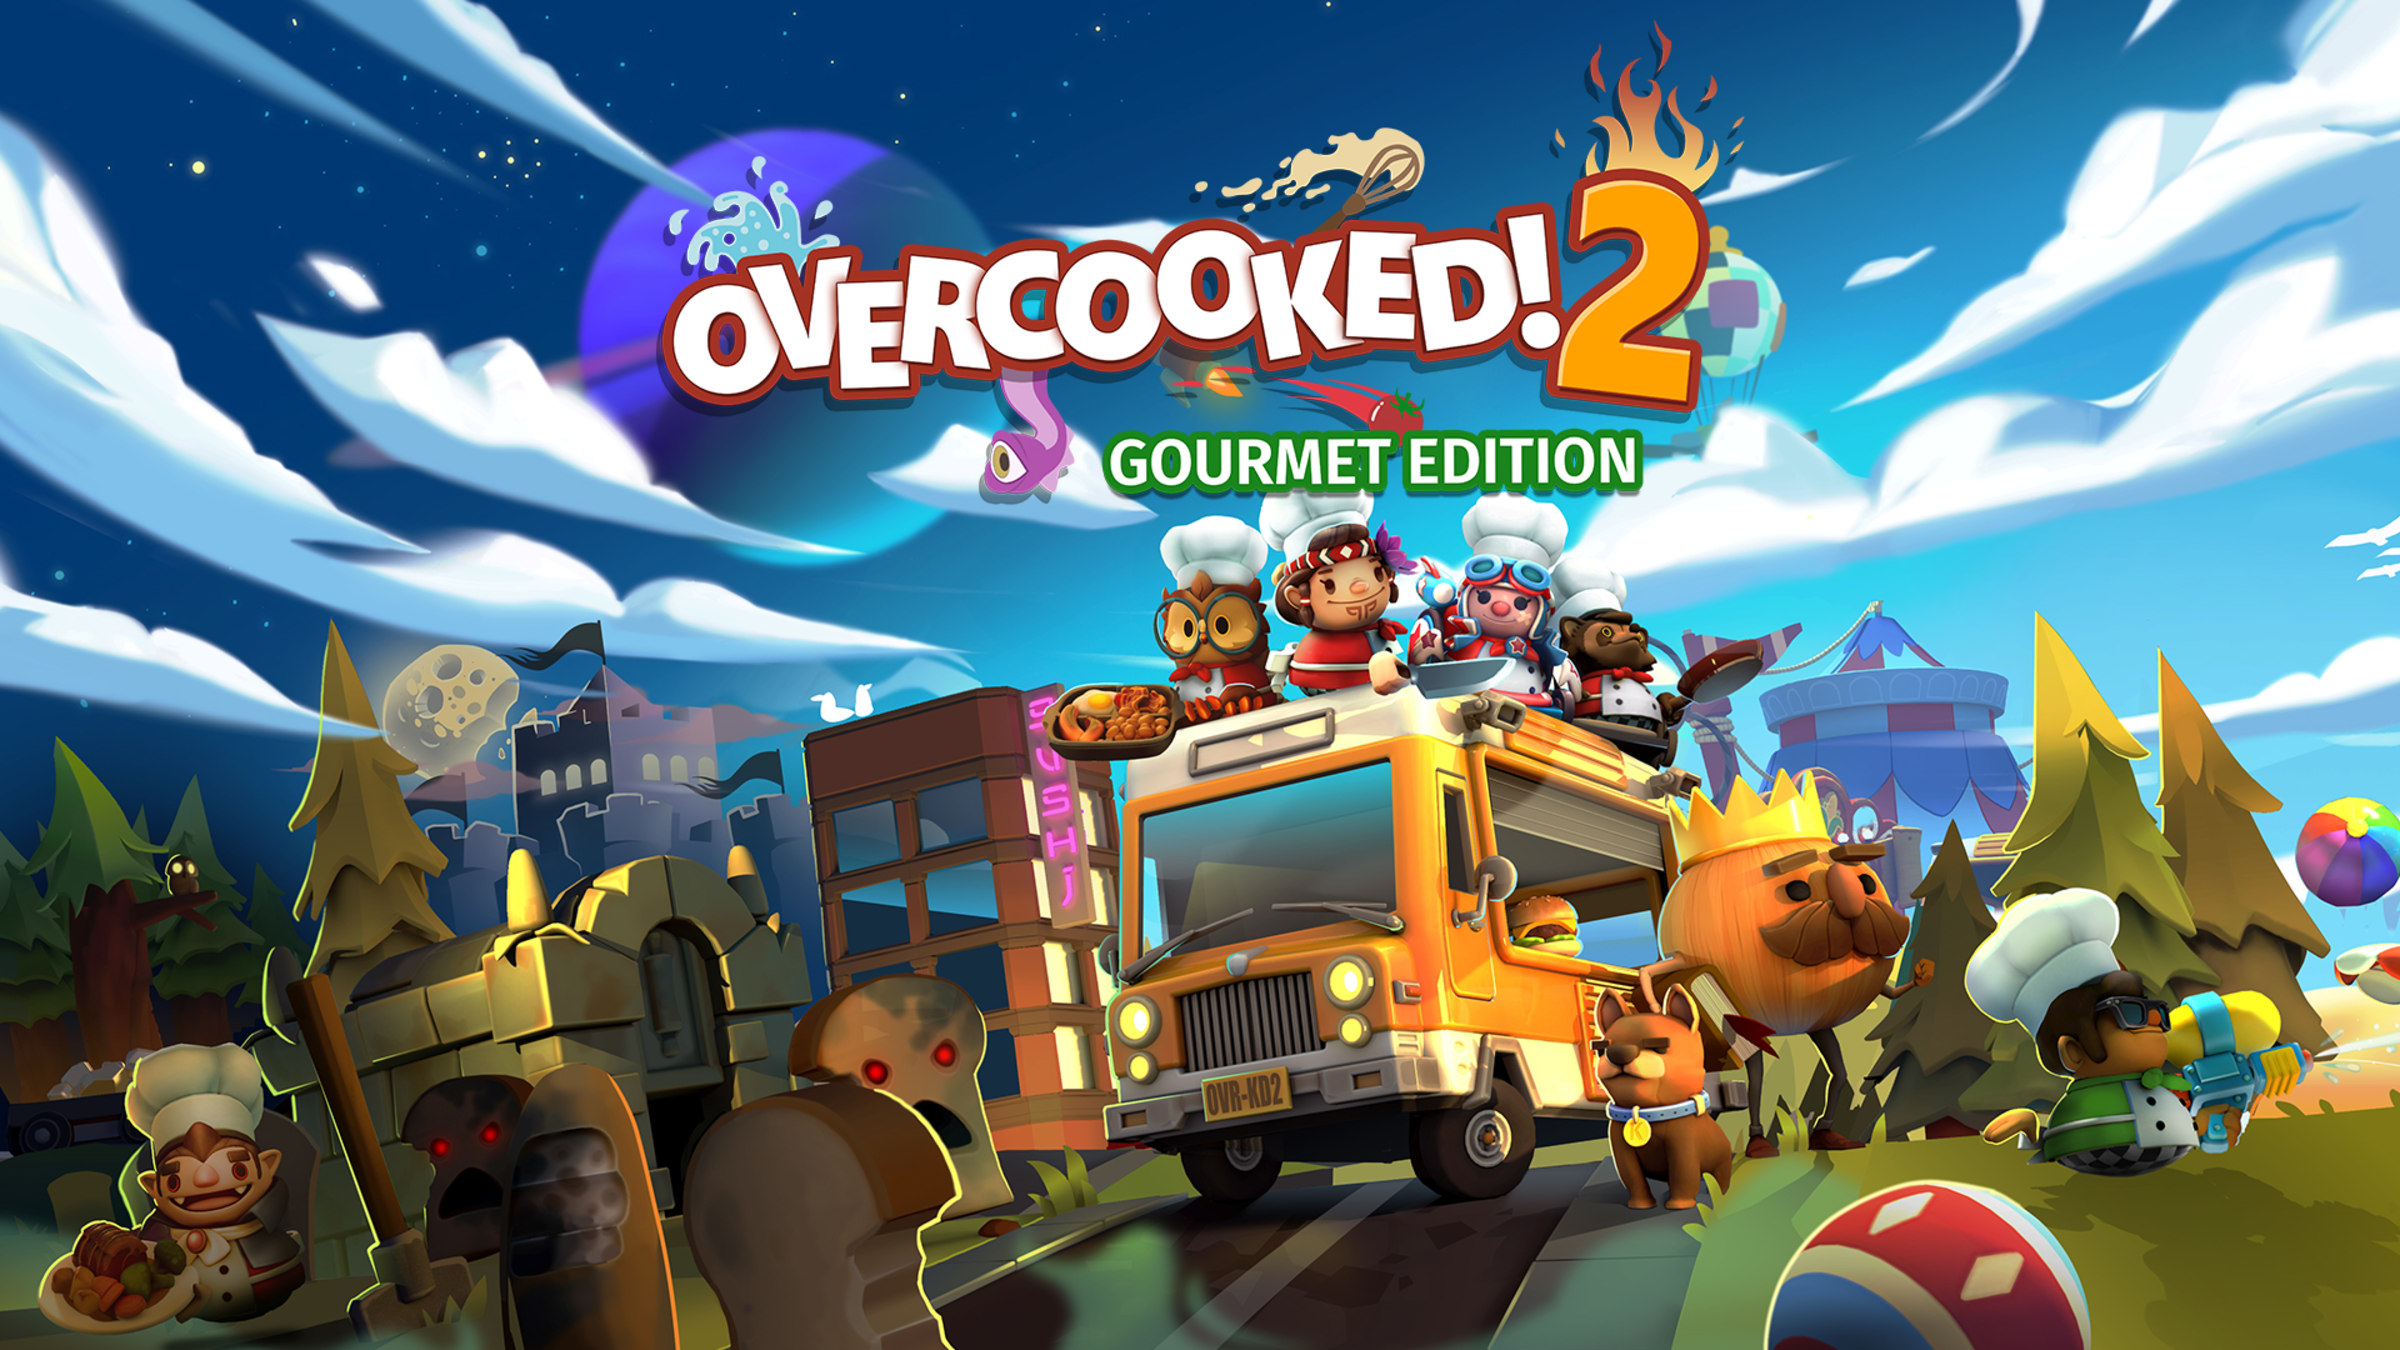 [NINTENDO SW] Overcooked! 2 - Gourmet Edition